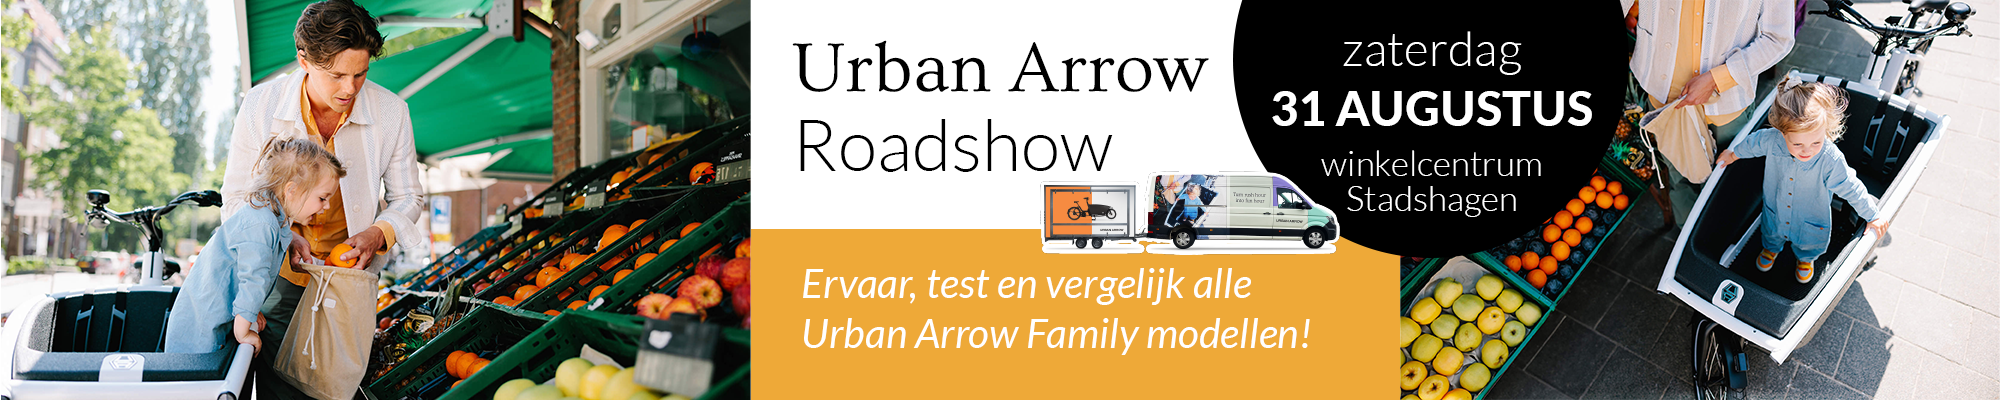 Urban Arrow RoadShow